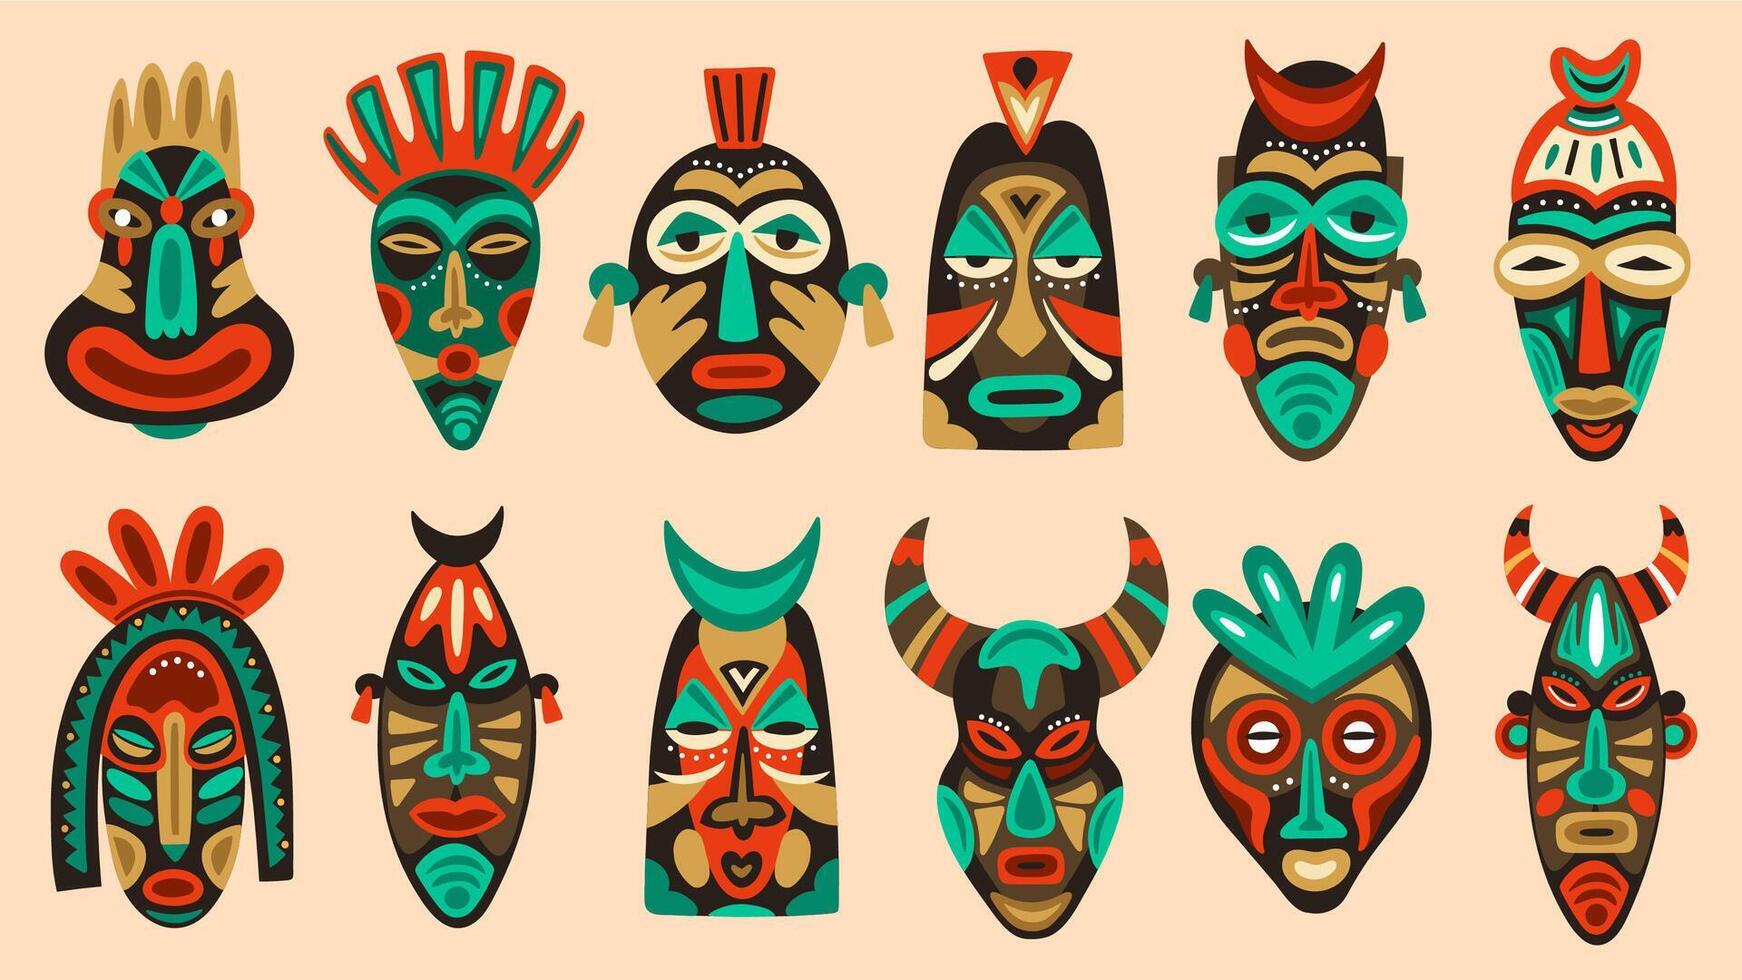 traditionnel tribal masques. rituel africain ou hawaïen traditionnel cérémonial totem, ethnique antique en bois visage masques vecteur illustration ensemble